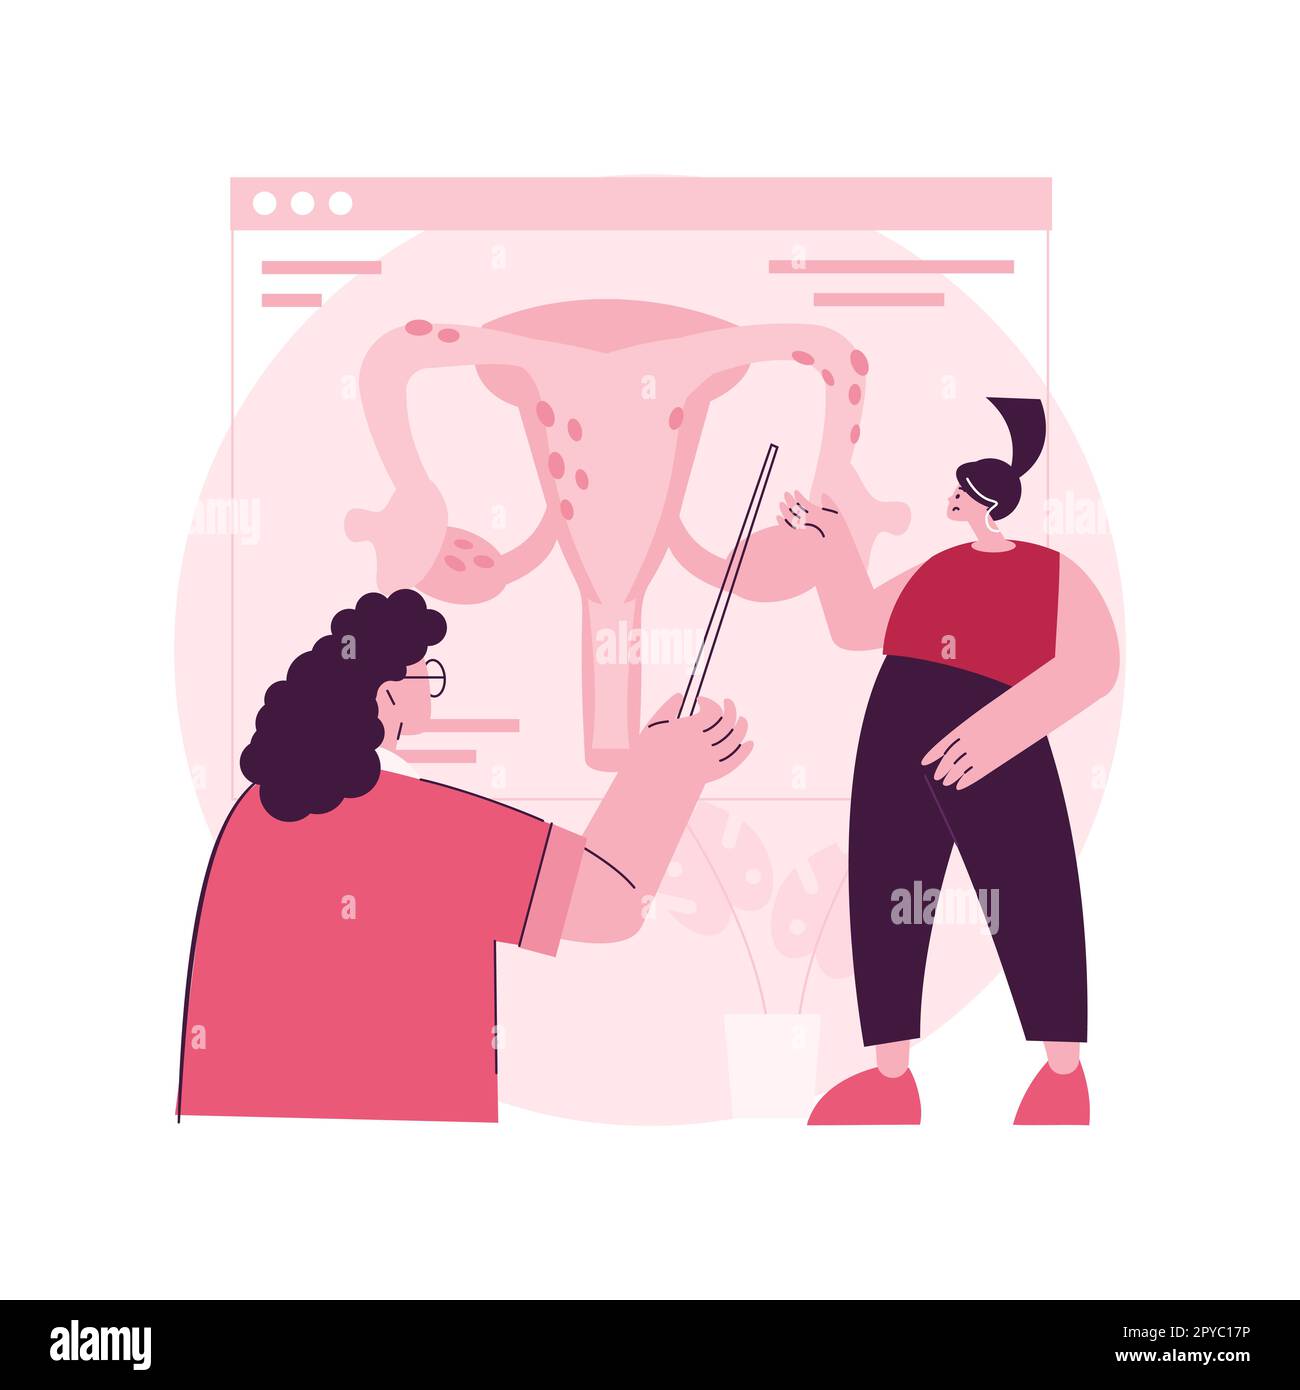 Illustrazione vettoriale del concetto astratto di endometriosi. Disfunzionalità dell'endometrio, clinica ginecologica, diagnosi e trattamento dell'endometriosi, metafora astratta della funzione riproduttiva femminile. Illustrazione Vettoriale